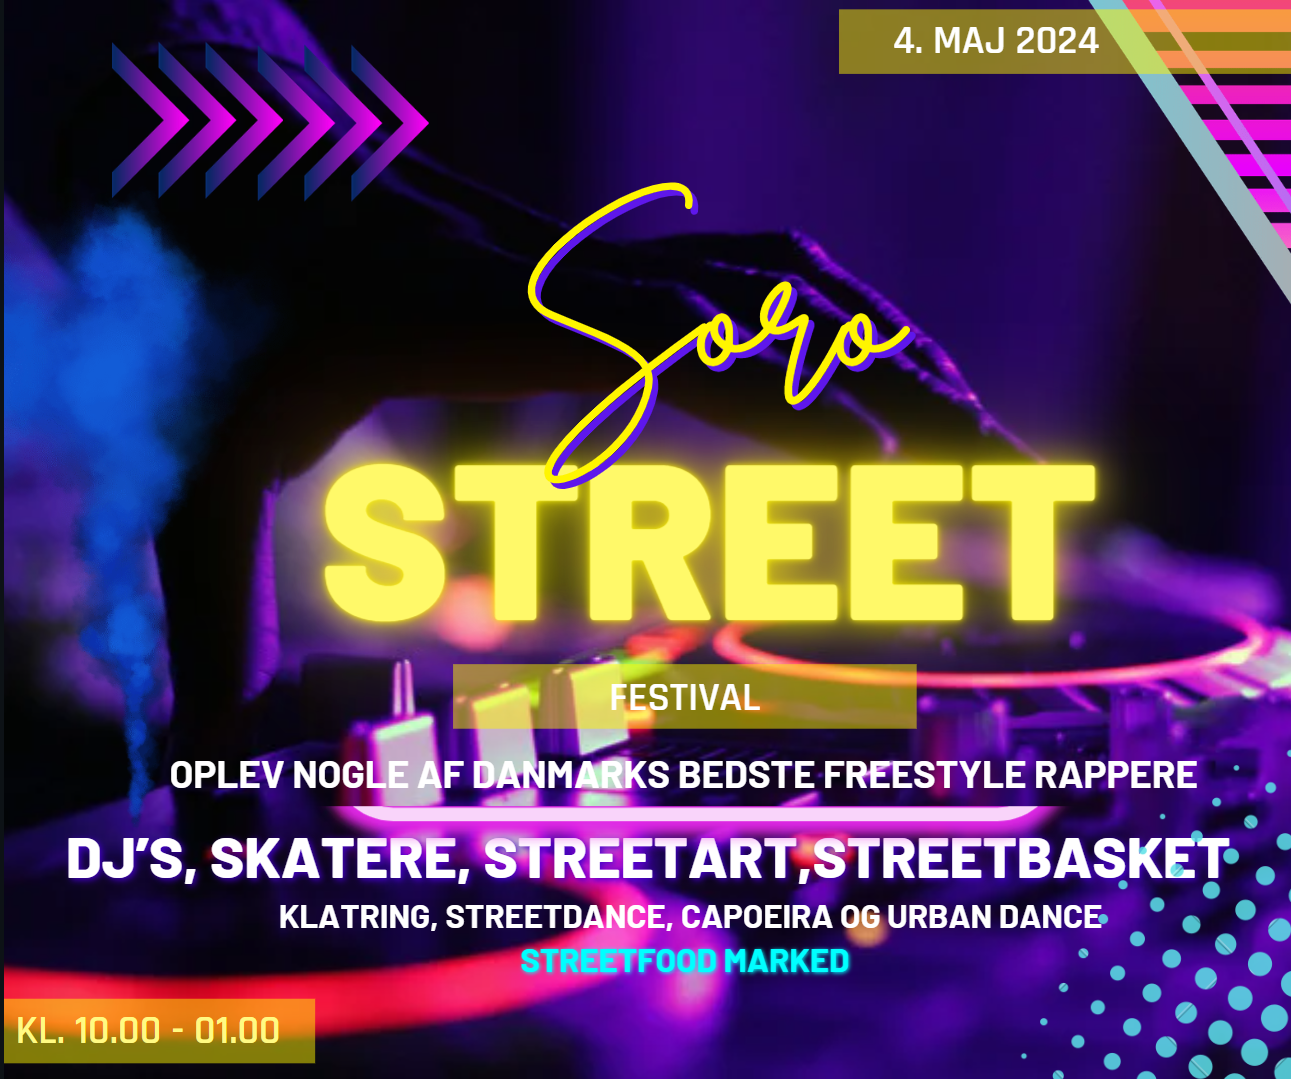 Sorø Streetfestival 2024